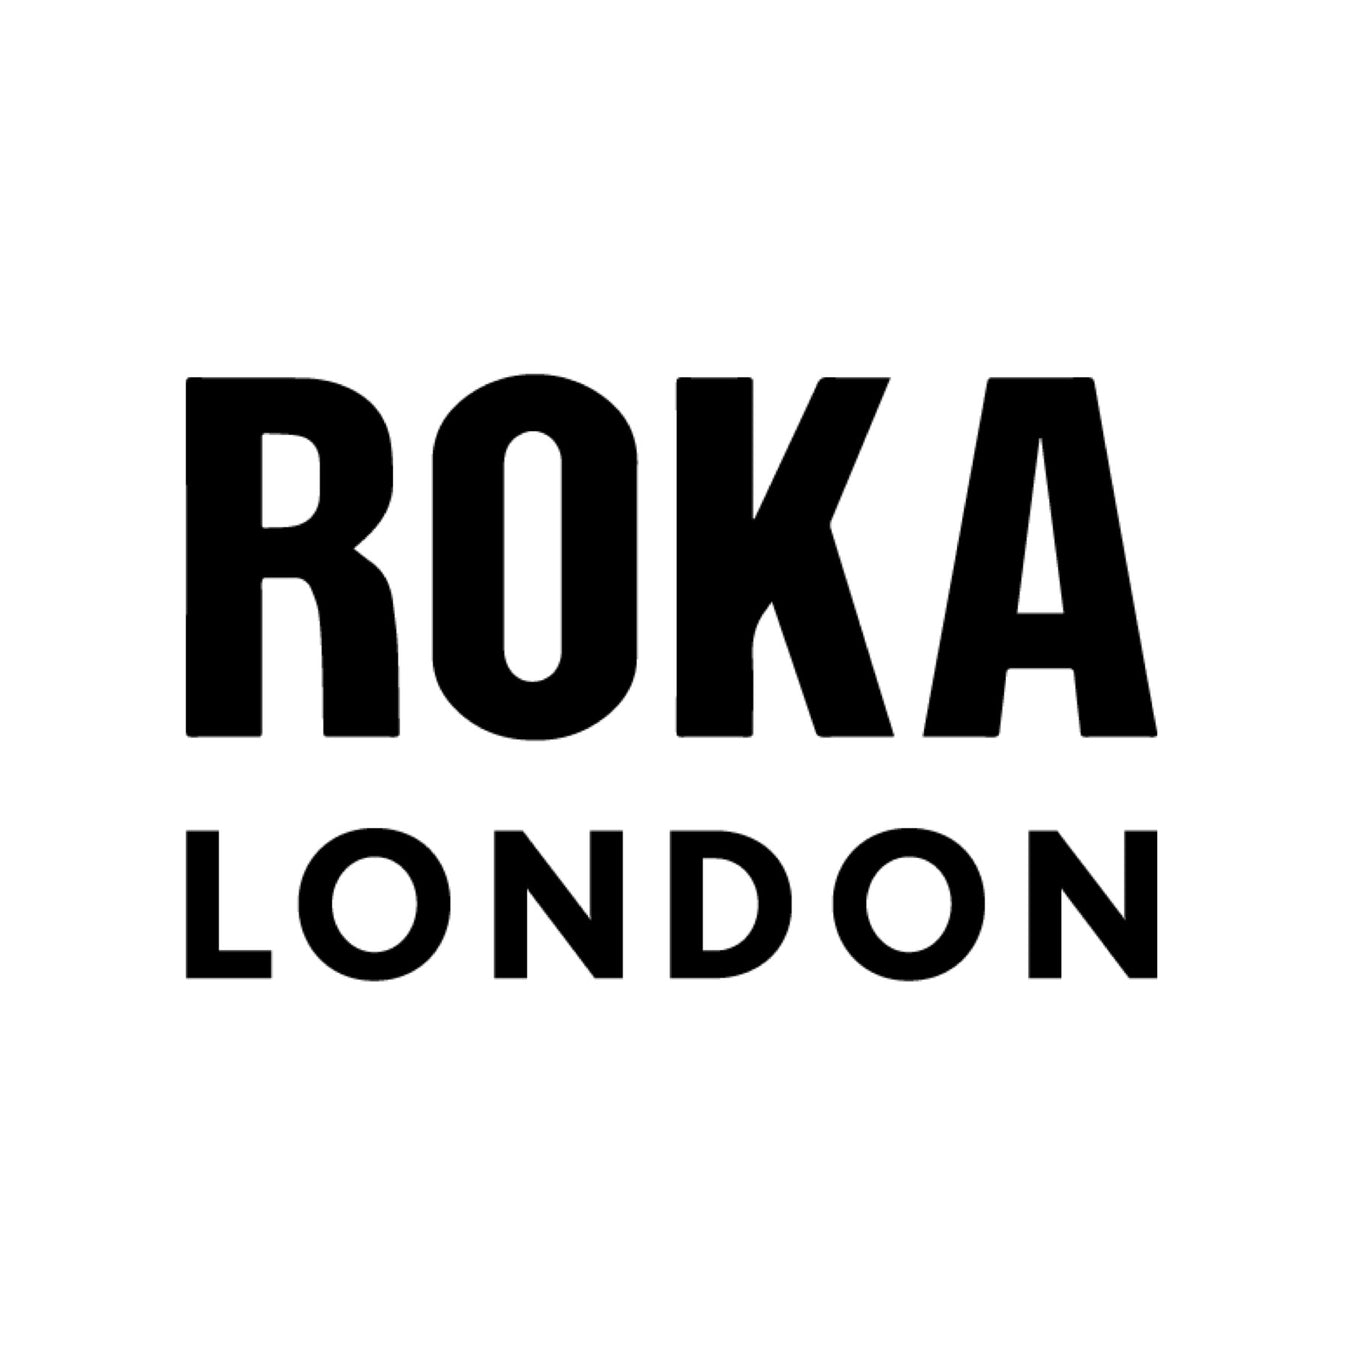 ROKA London